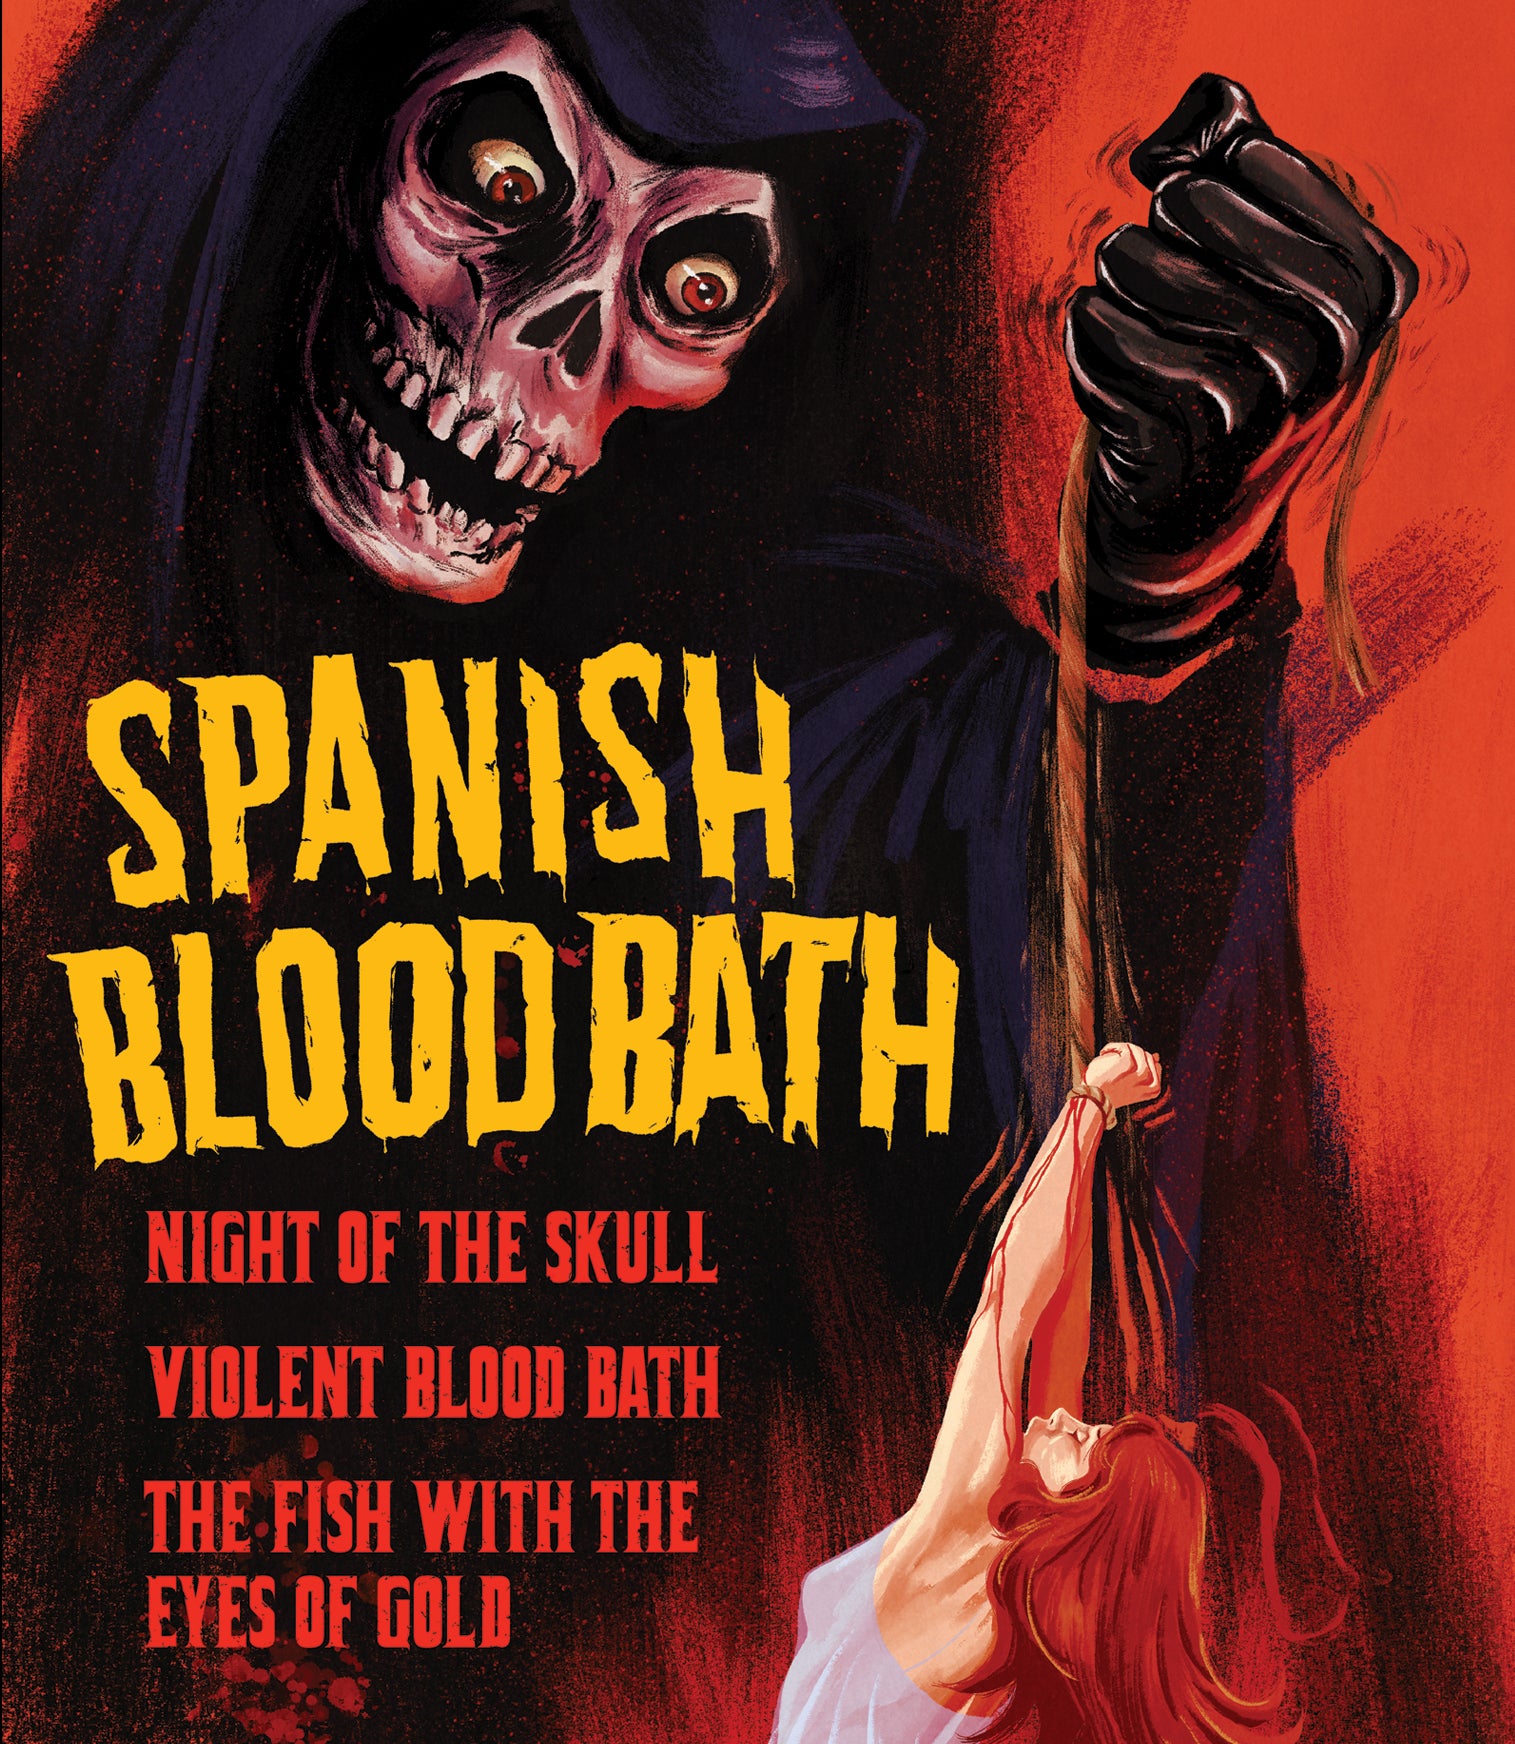 SPANISH BLOODBATH (LIMITED EDITION) BLU-RAY